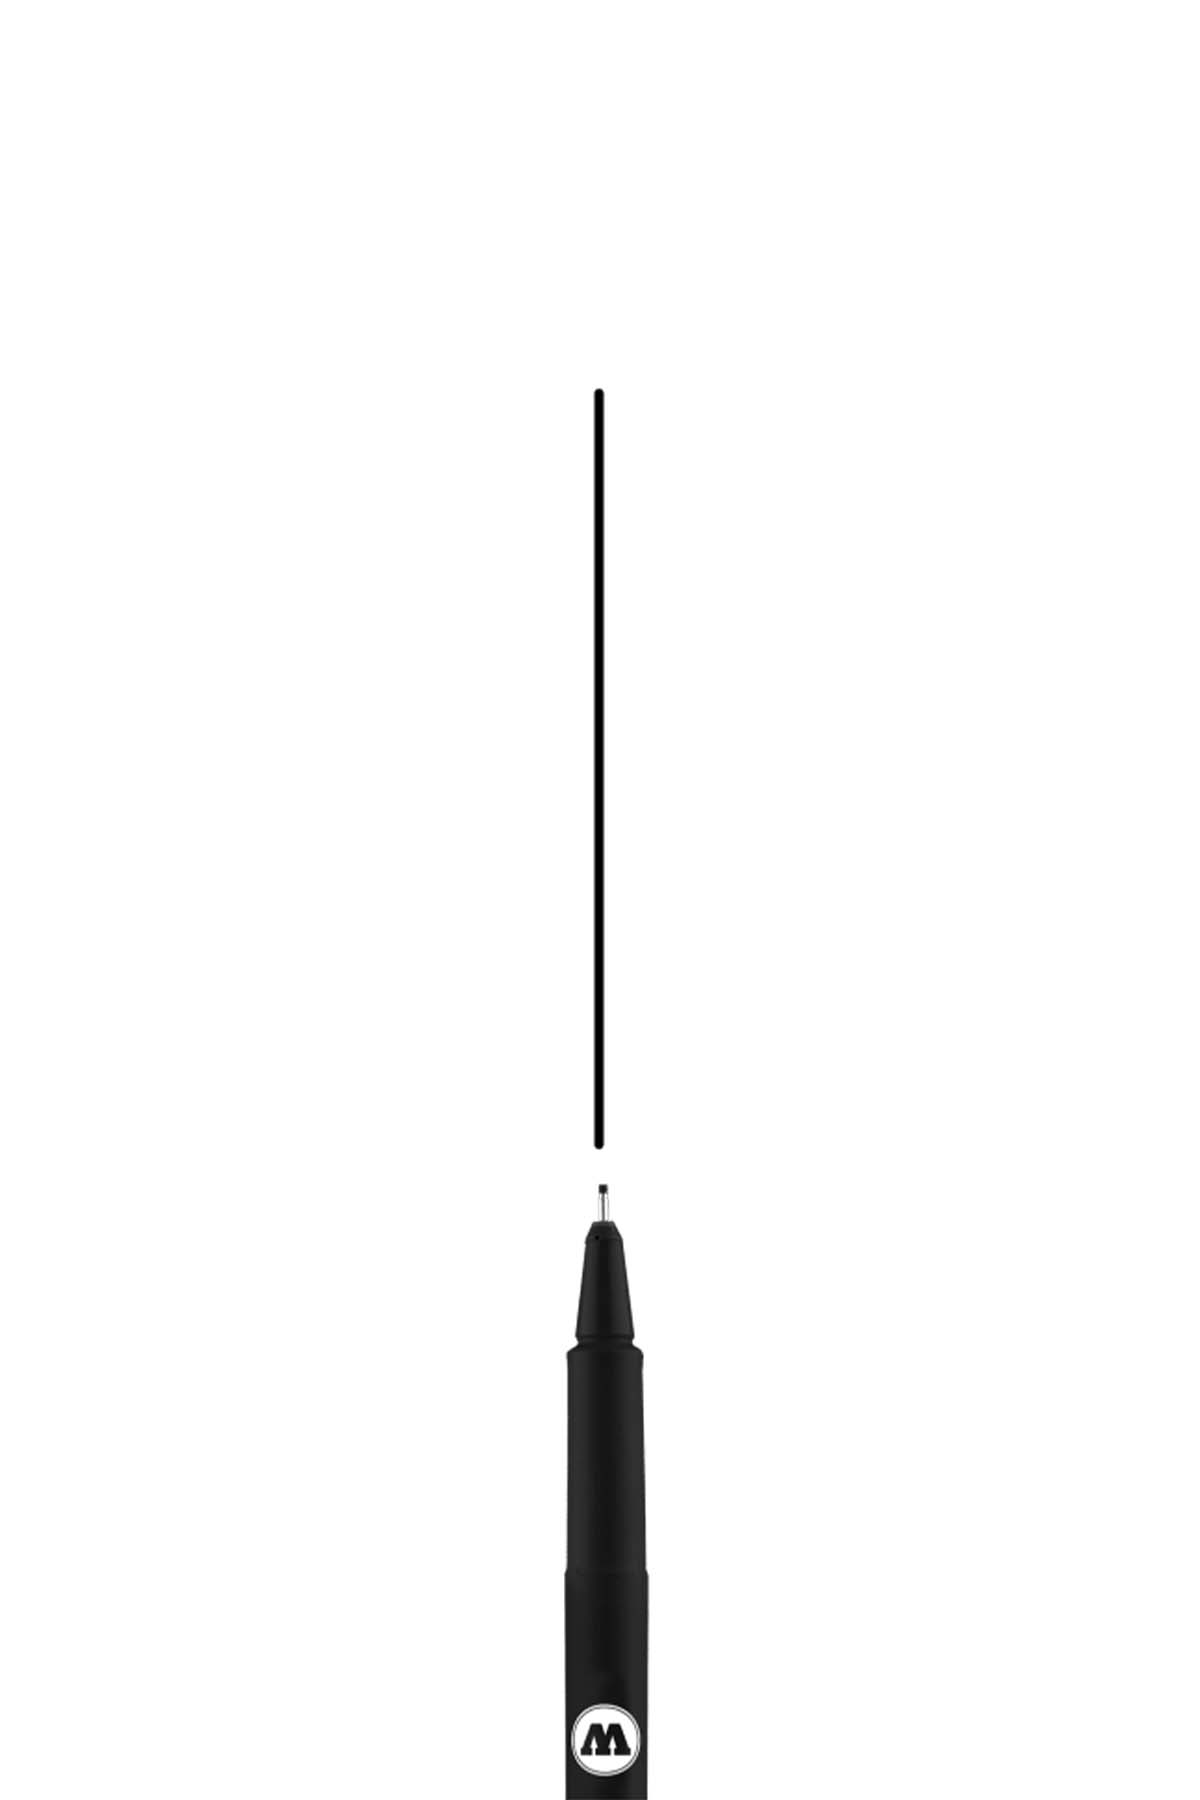 Molotow BLACKLINER Marker 0.9mm